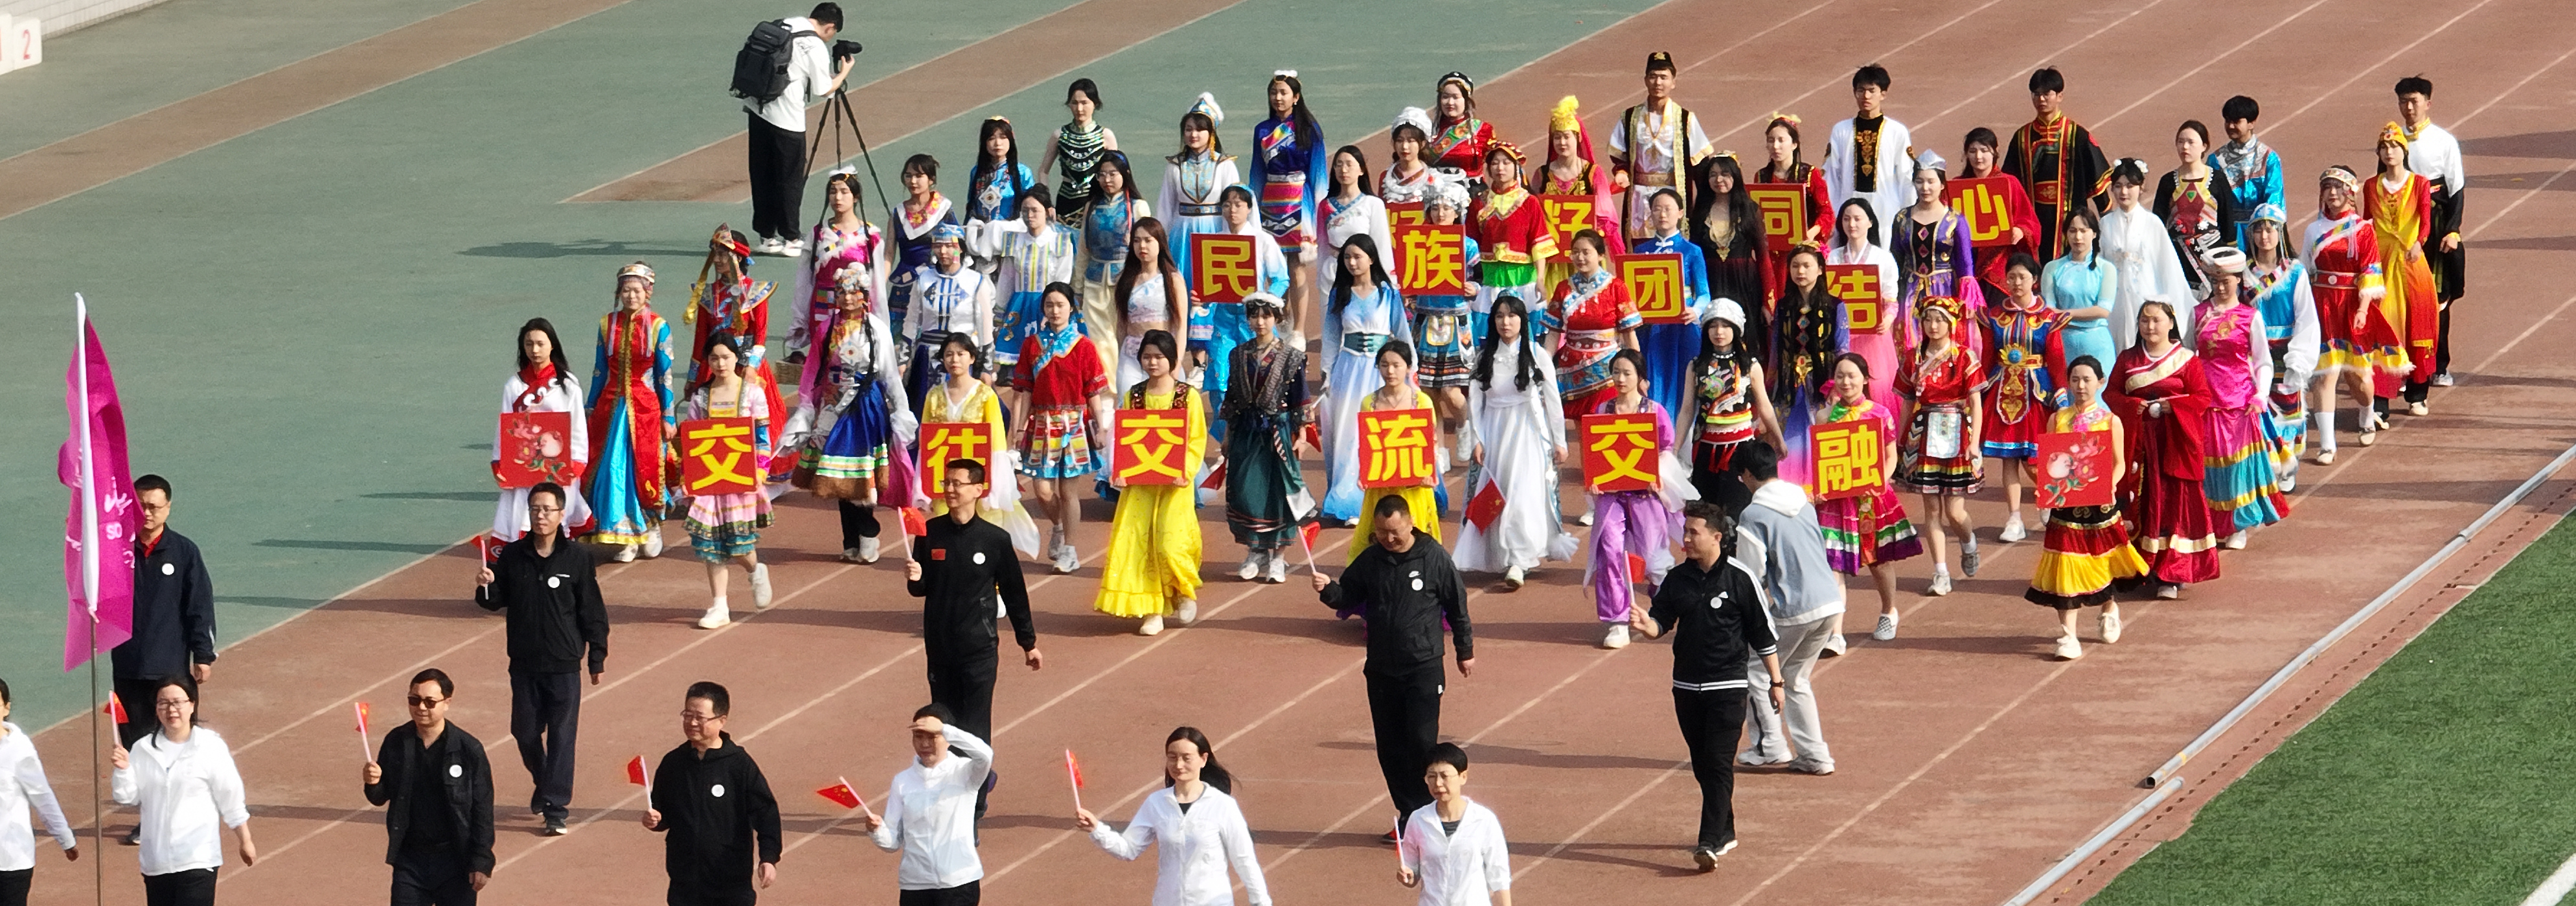 民族团结 籽籽同心——mgm美高梅79906学生参与学校运动会